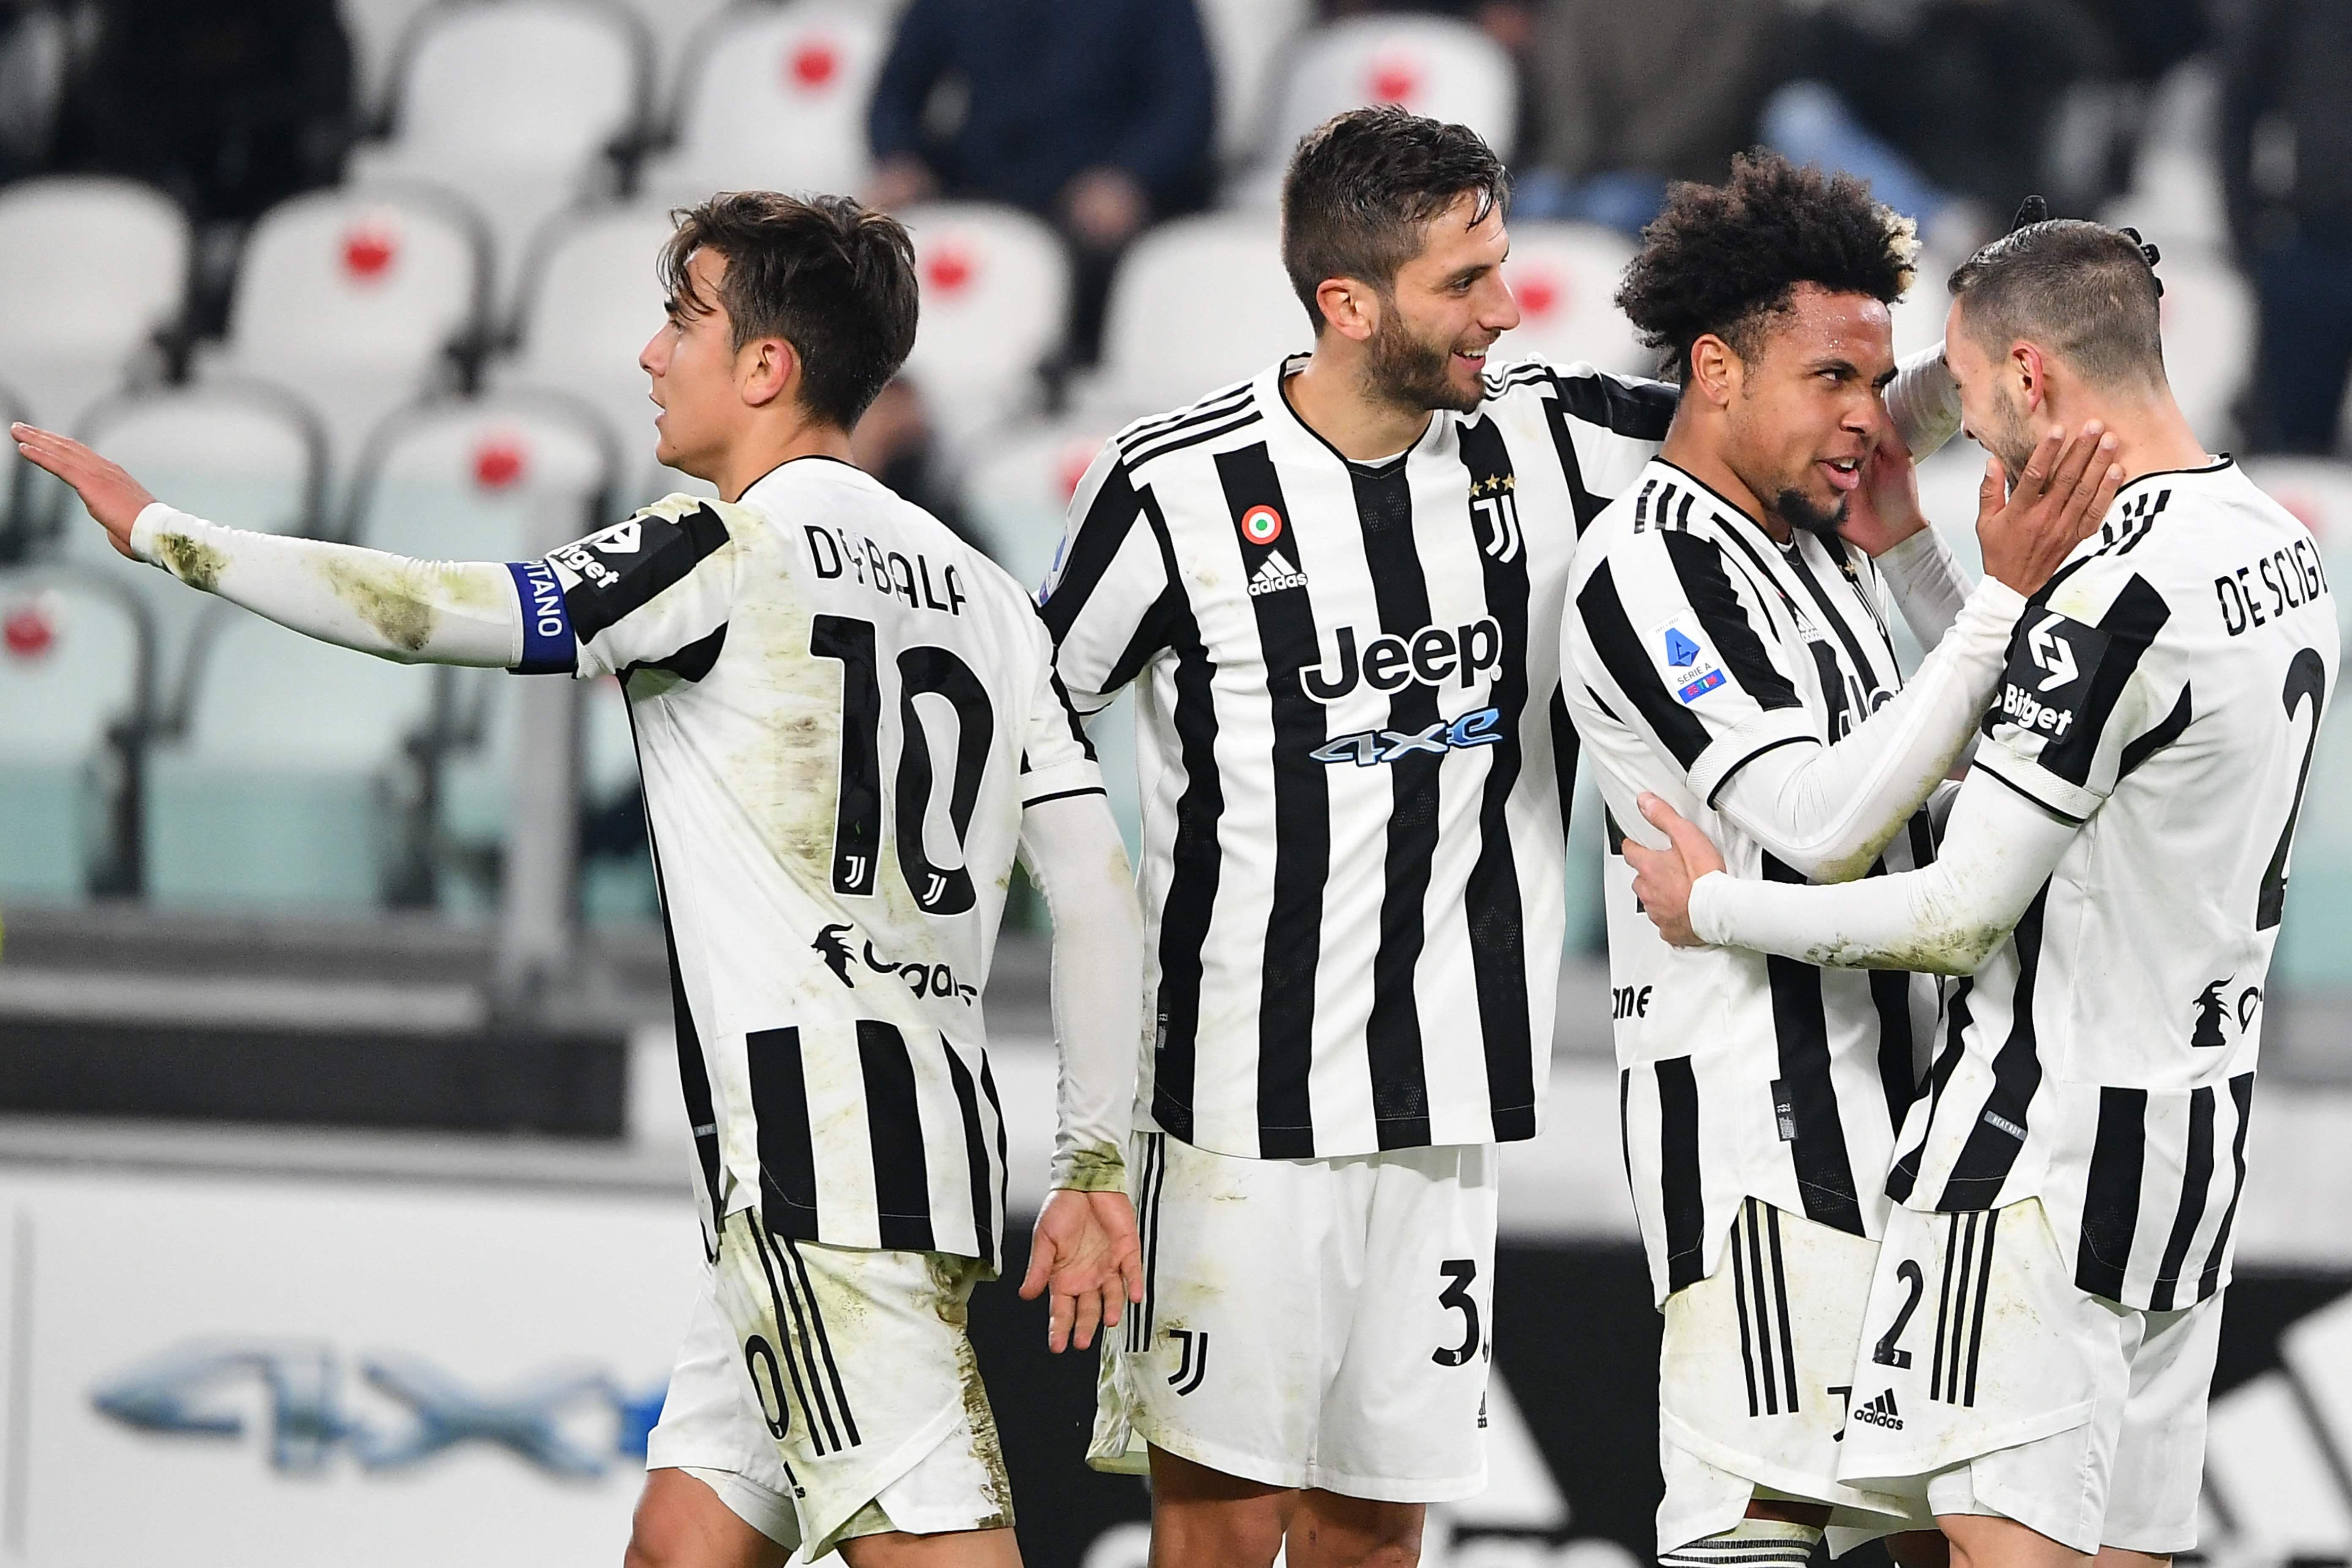 Juventus, Udineseyi rahat geçti ve seri 8 maça yükseldi